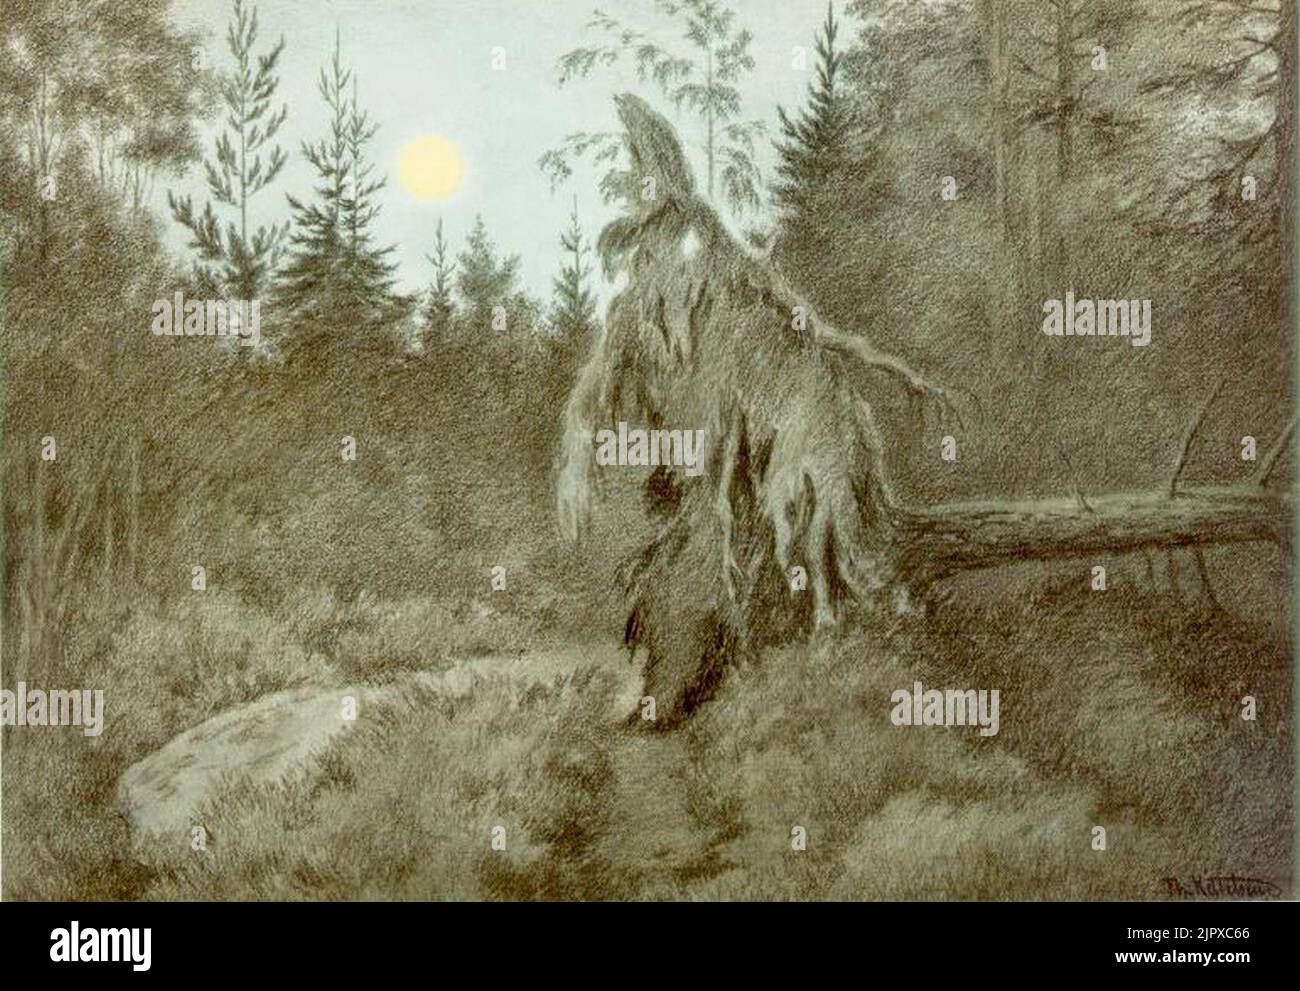 Theodor Kittelsen - Det rusler og tusler rasler og tasler, 1900 (Creepy, Crawly, Rustling, Bustling) Stock Photo